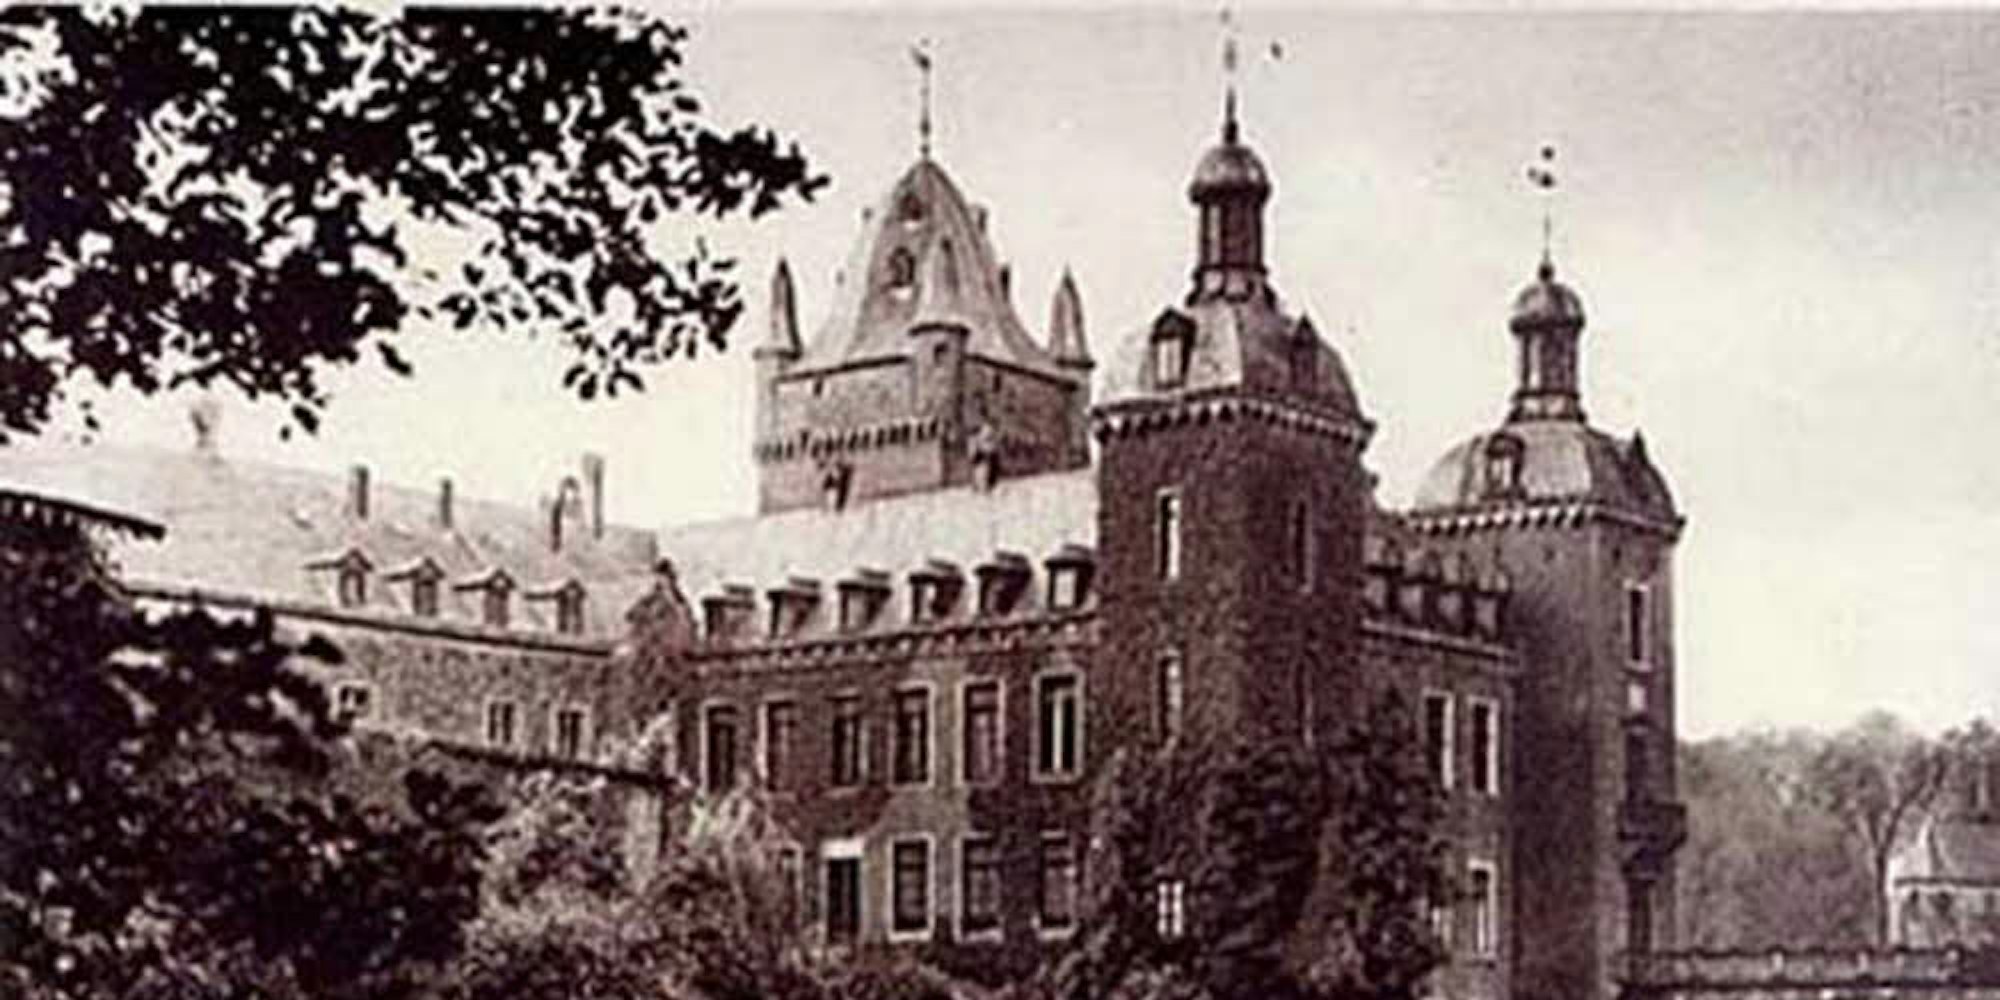 Schloss Harff war das Wahrzeichen des Umsiedlungsortes. Es wurde 1972 gesprengt.